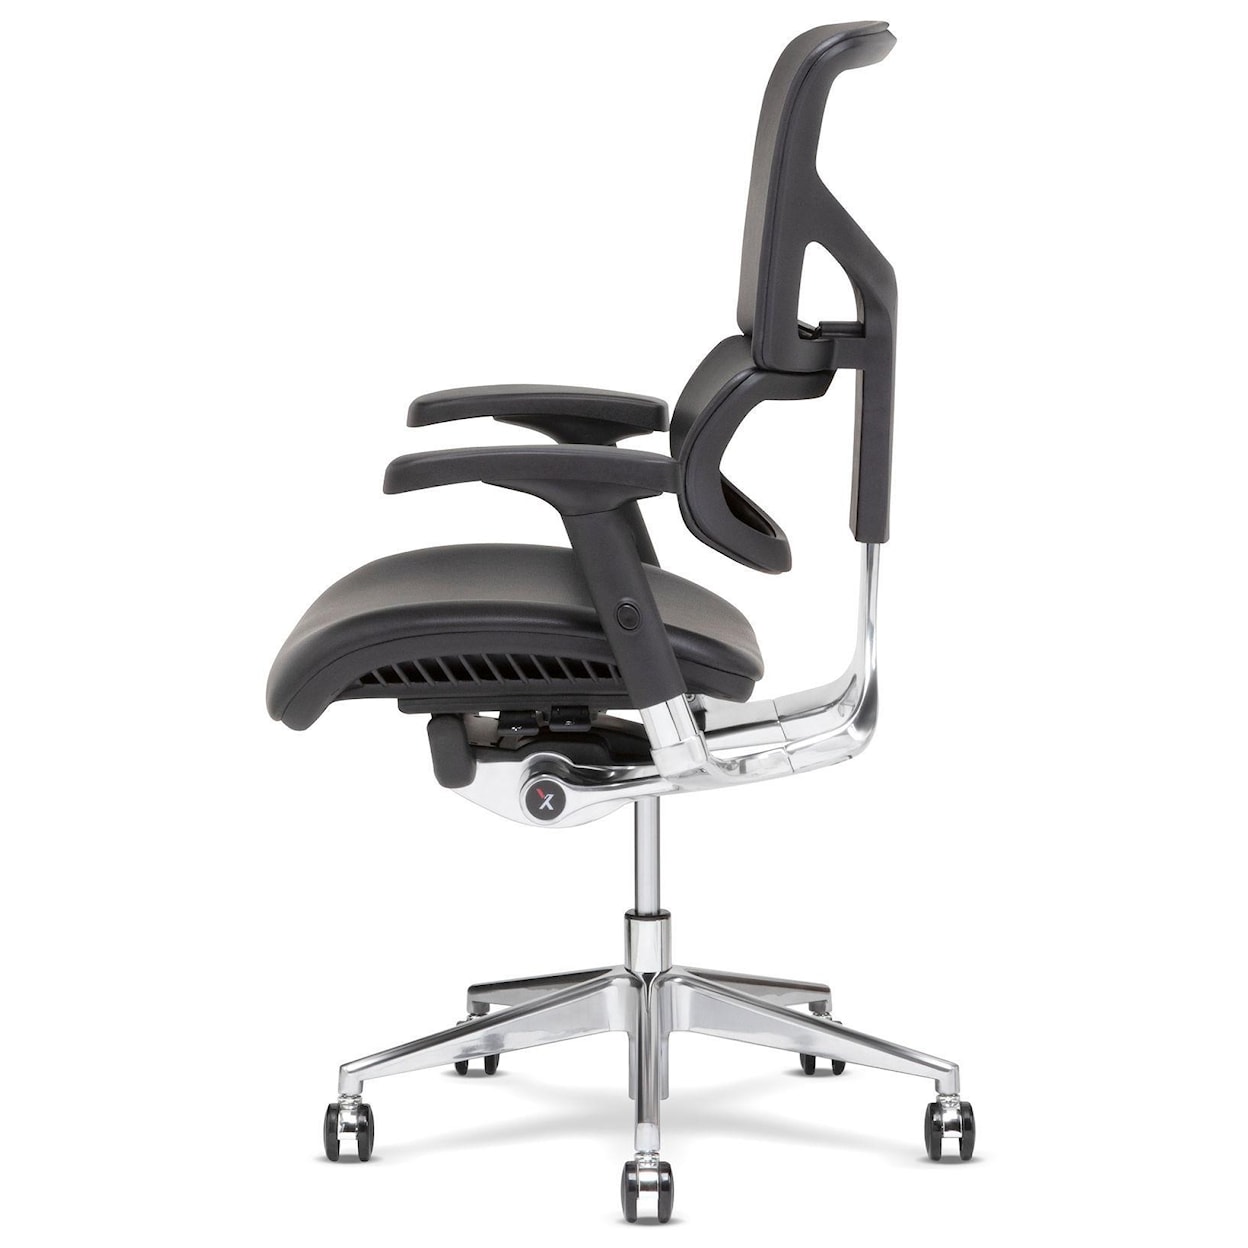 X-Chair X4 Desk Chair